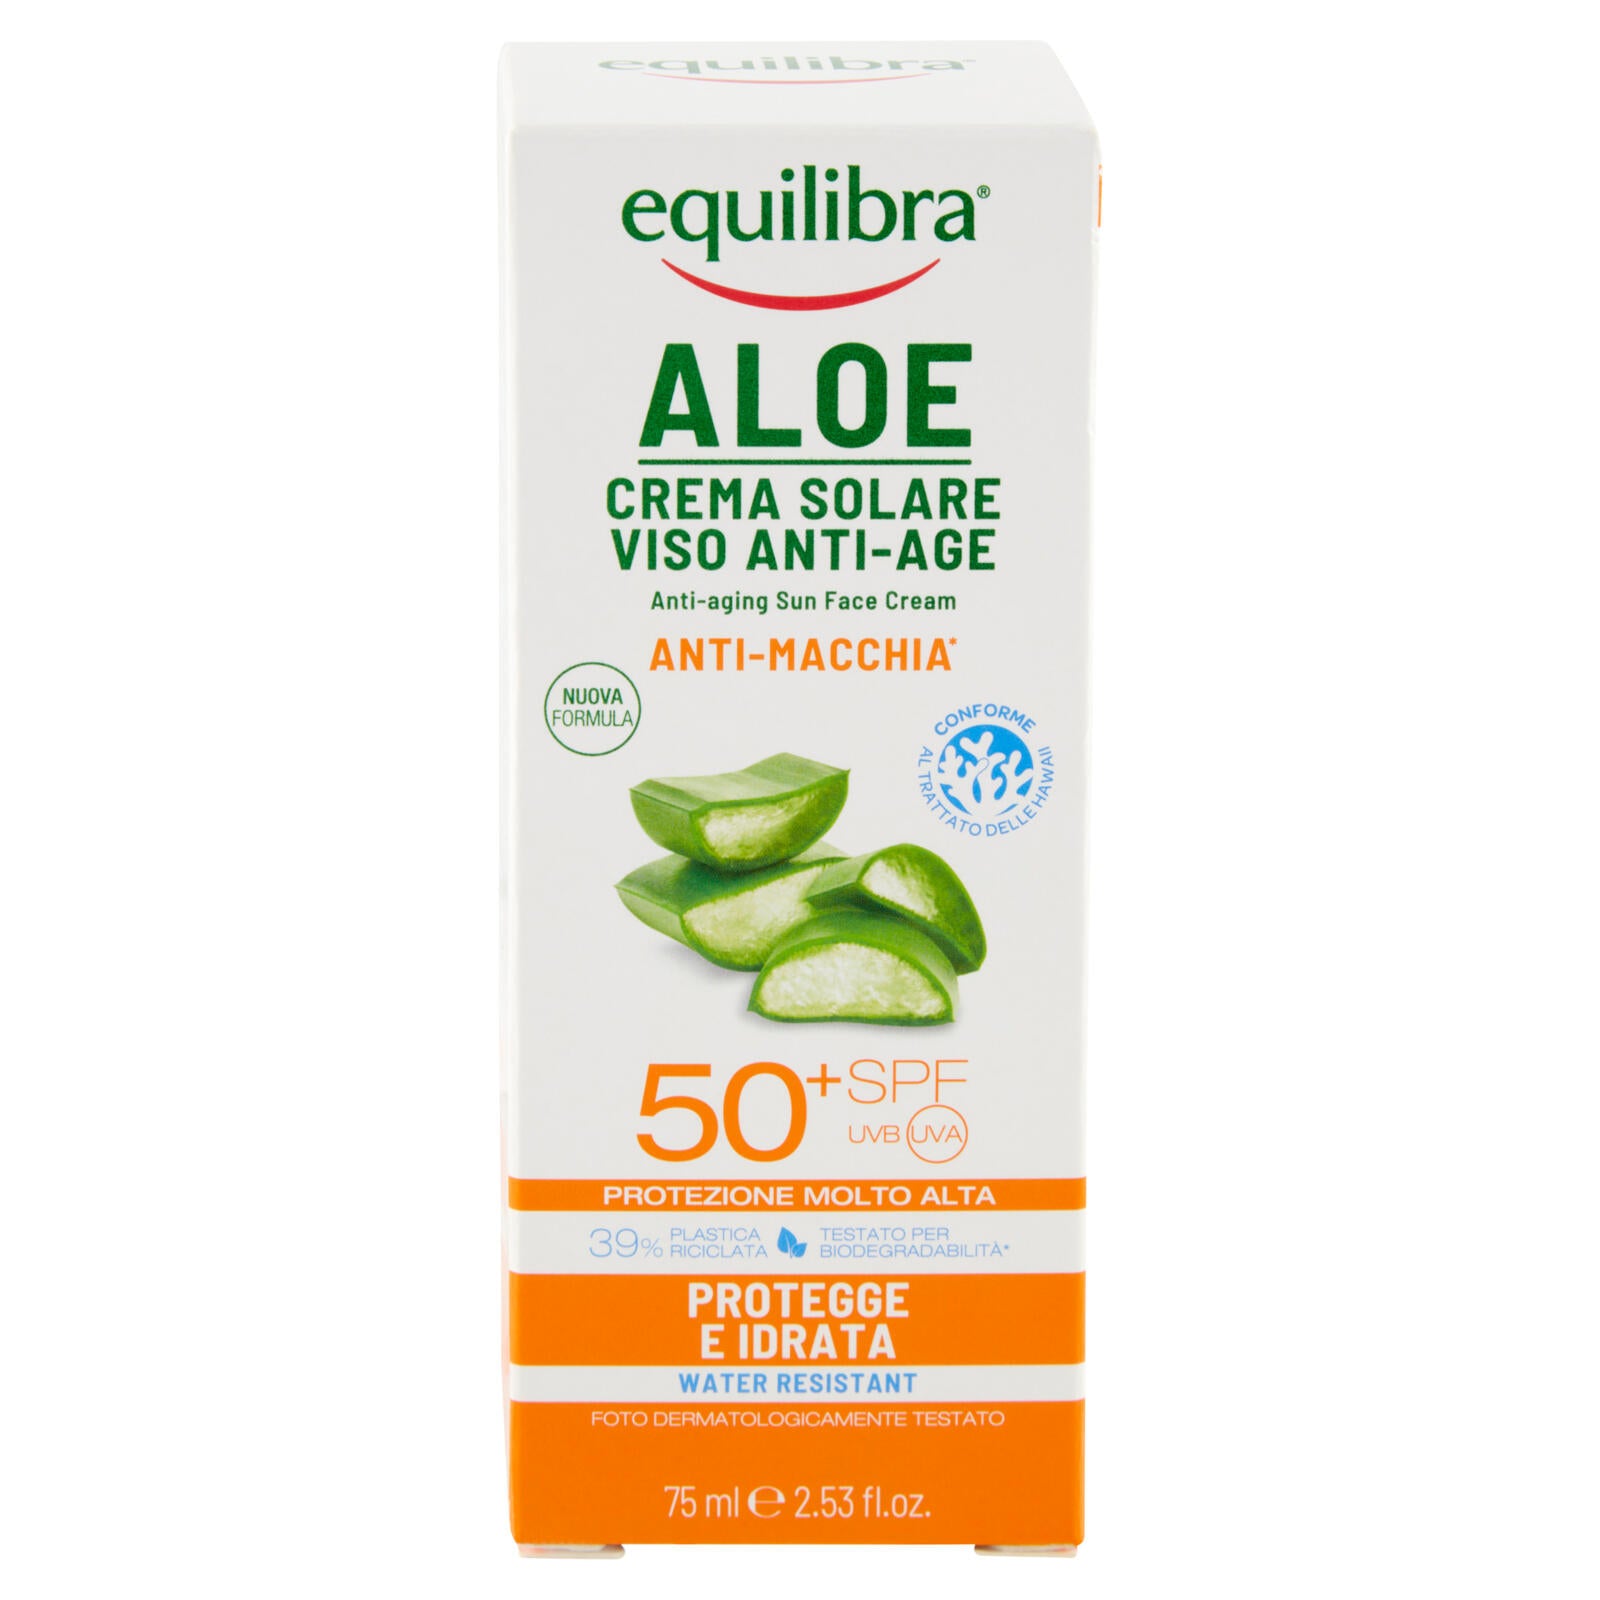 equilibra Aloe Crema Solare Viso Anti-Age 50⁺ SPF Protezione Molto Alta 75 ml